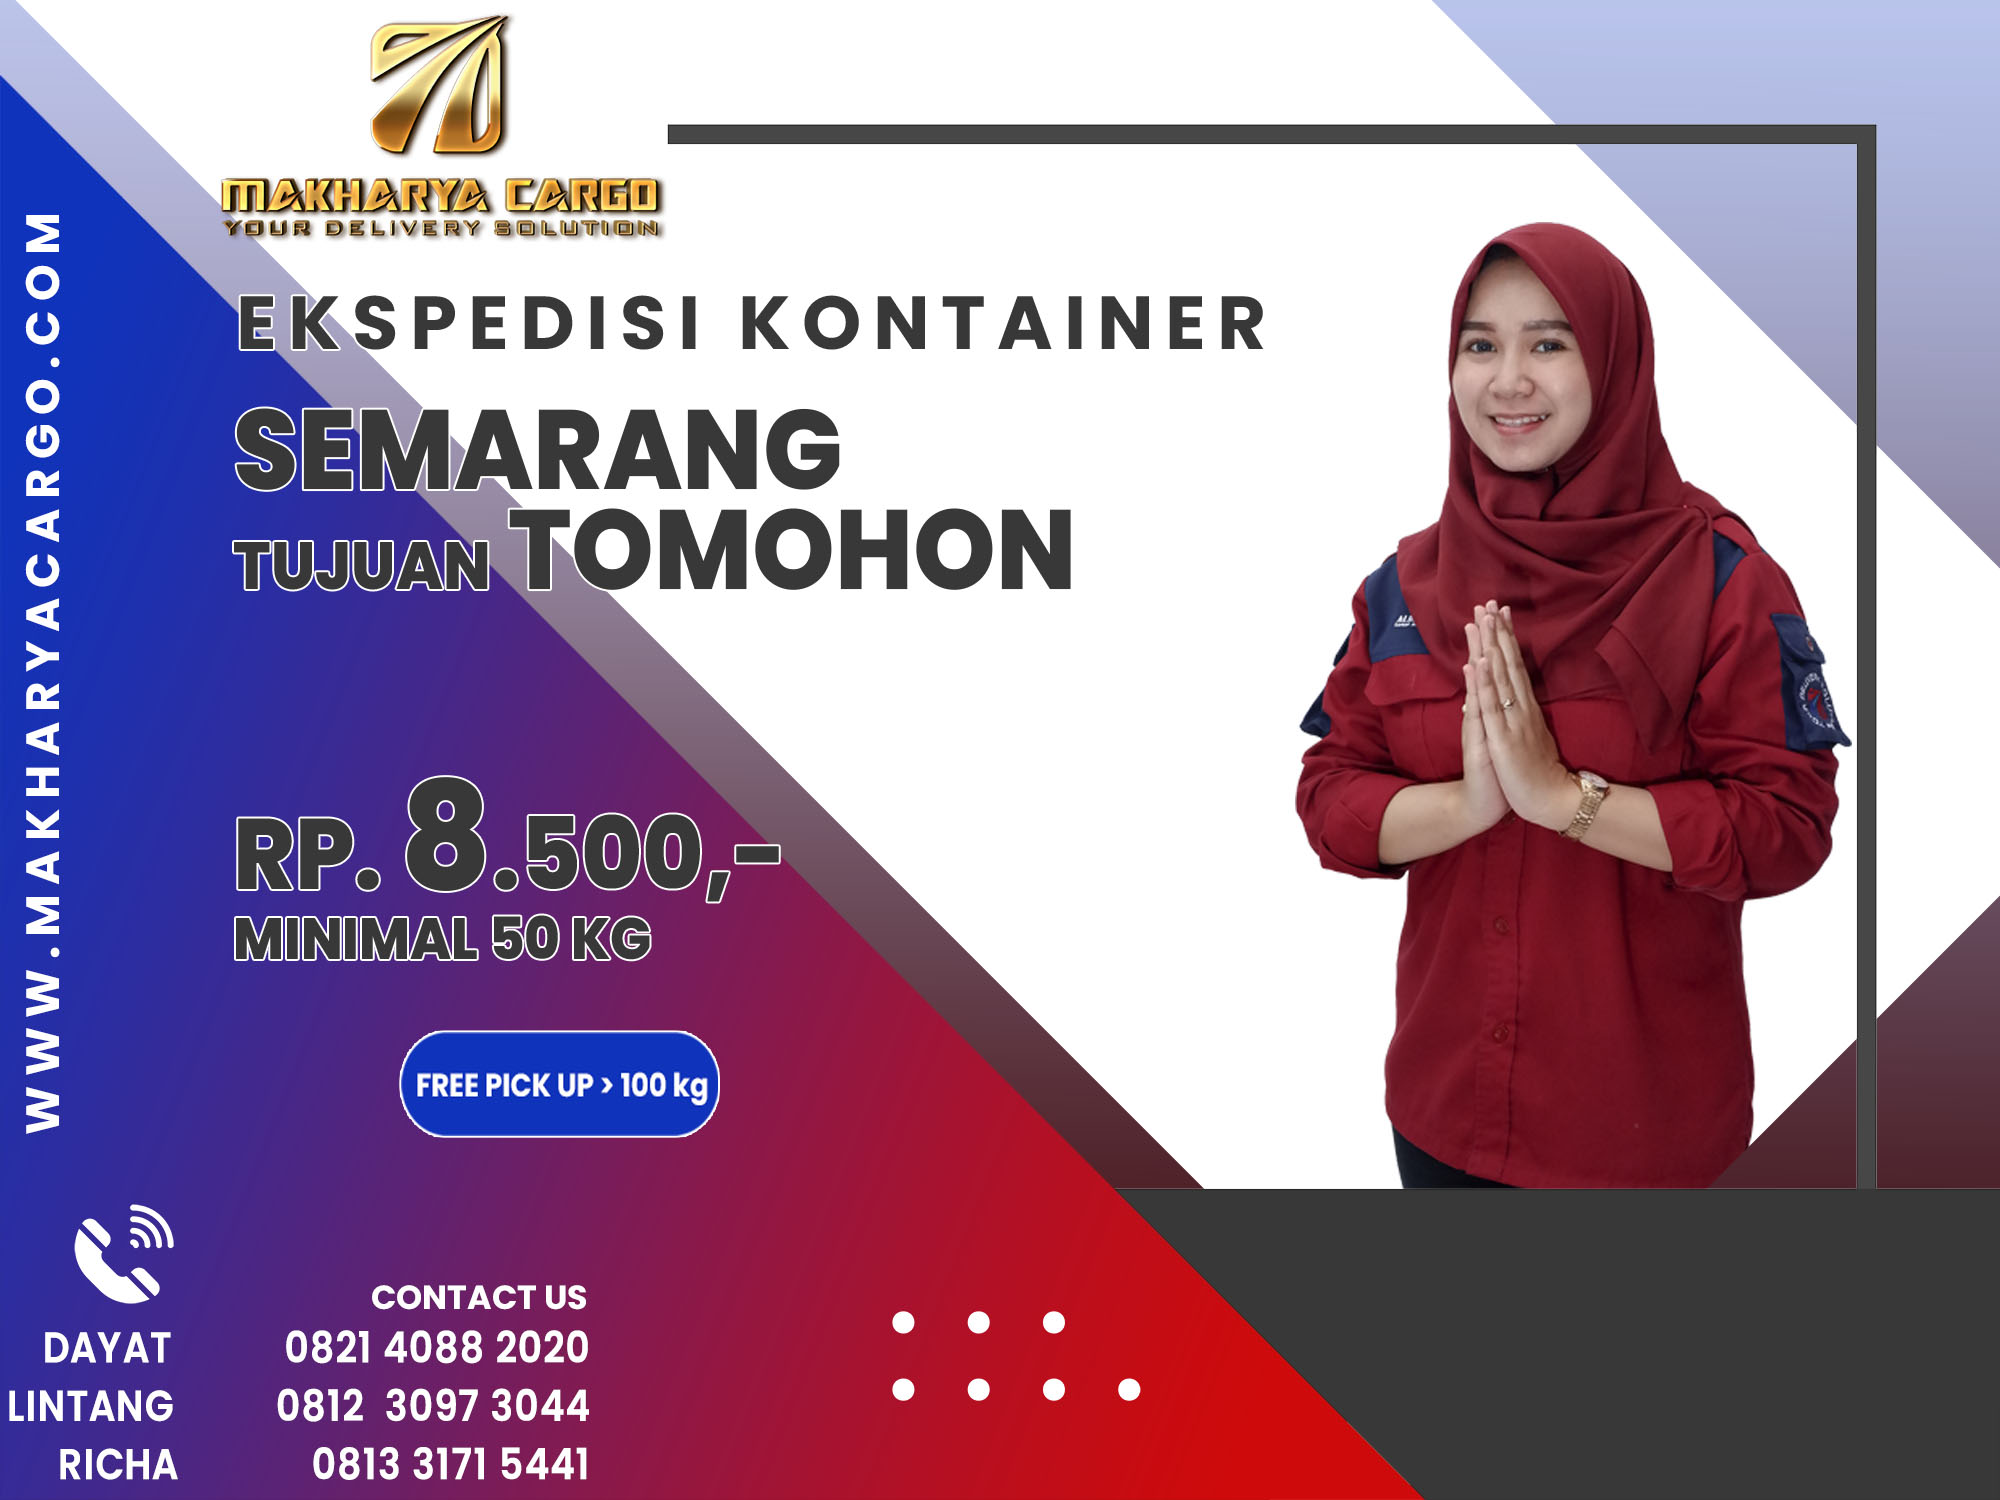 Ekspedisi Kontainer Semarang Tomohon